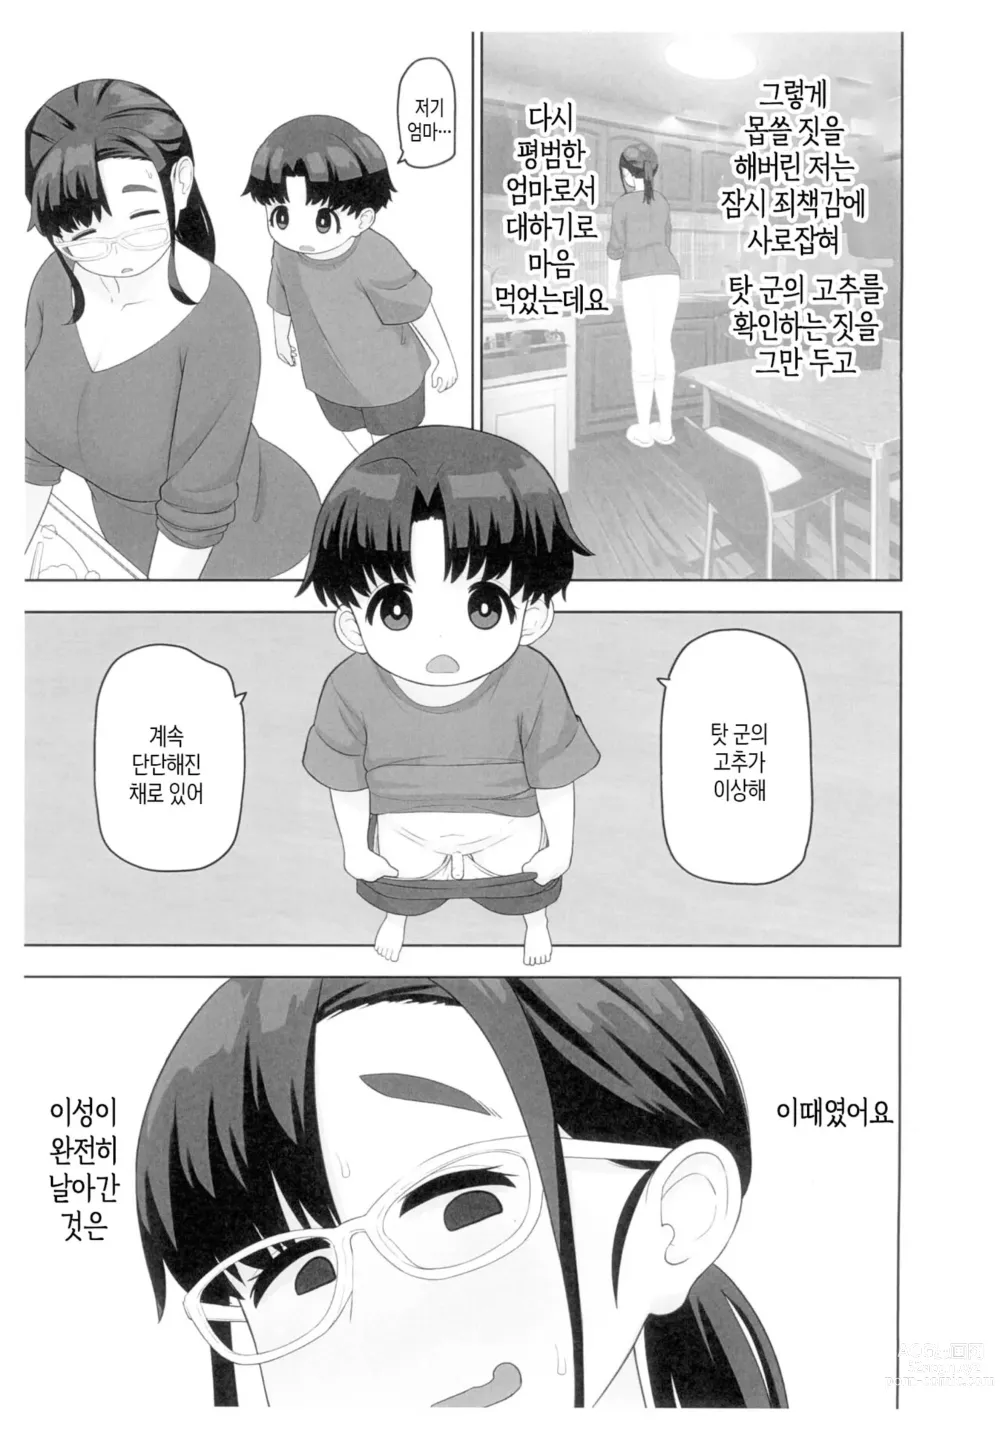 Page 6 of doujinshi 체험수기류 소설 에로동인 오네쇼타 동인작가 엄마의 비밀